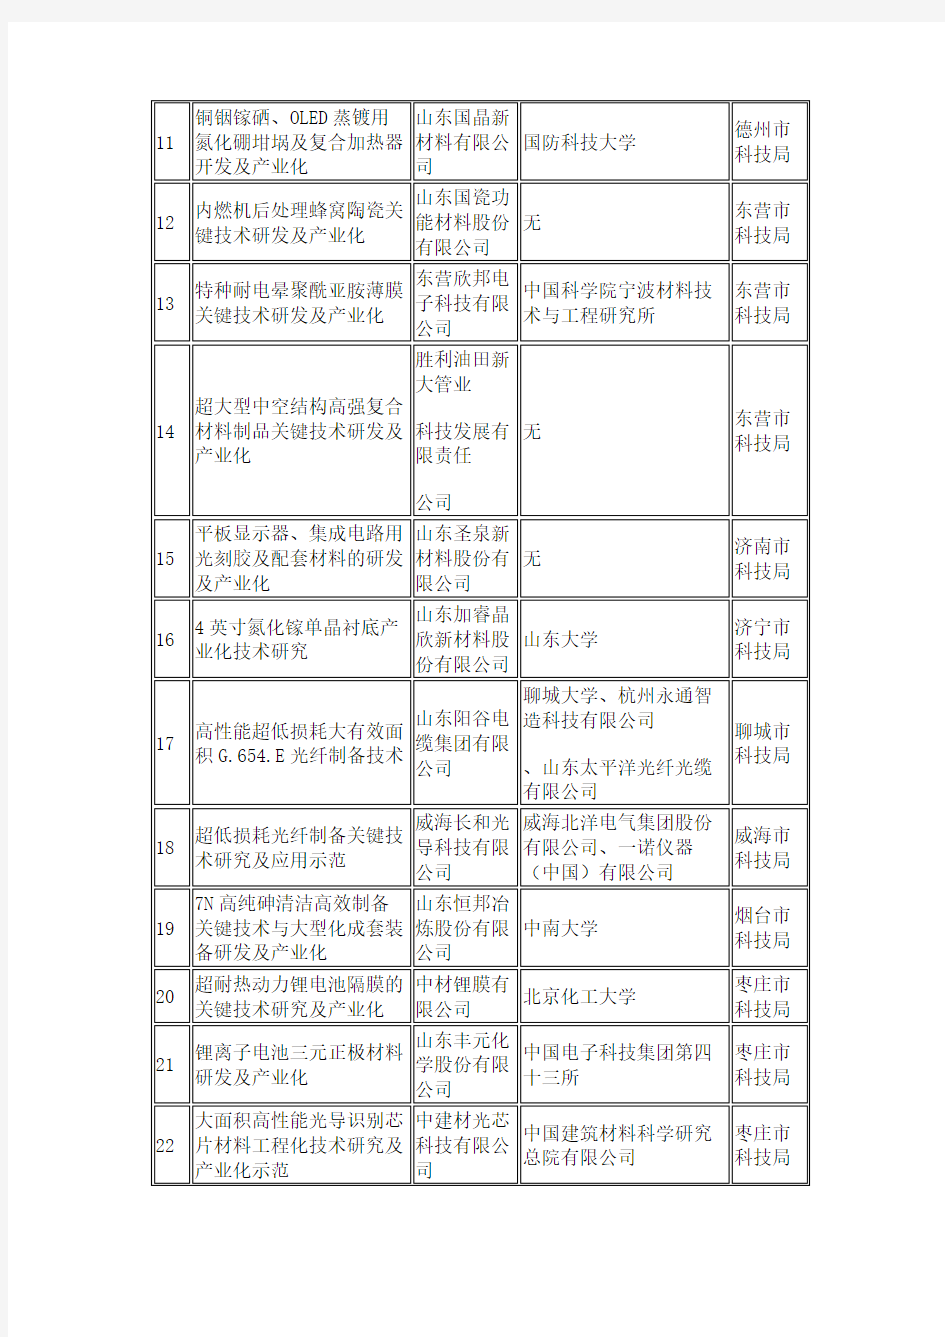 2019年山东省重点研发项目名单公示